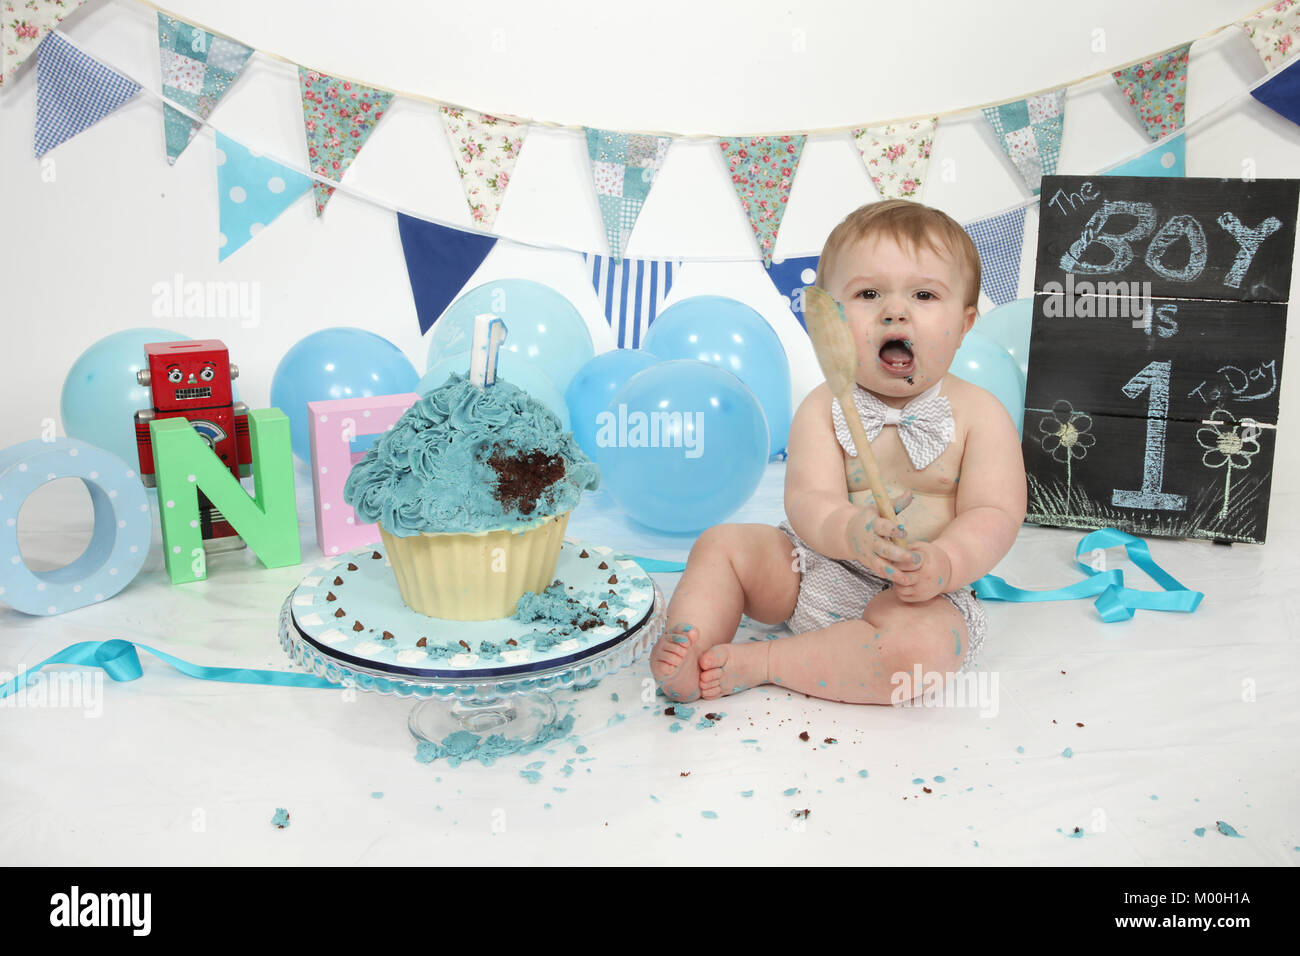 1 ans d'anniversaire cake smash, fun food Banque D'Images